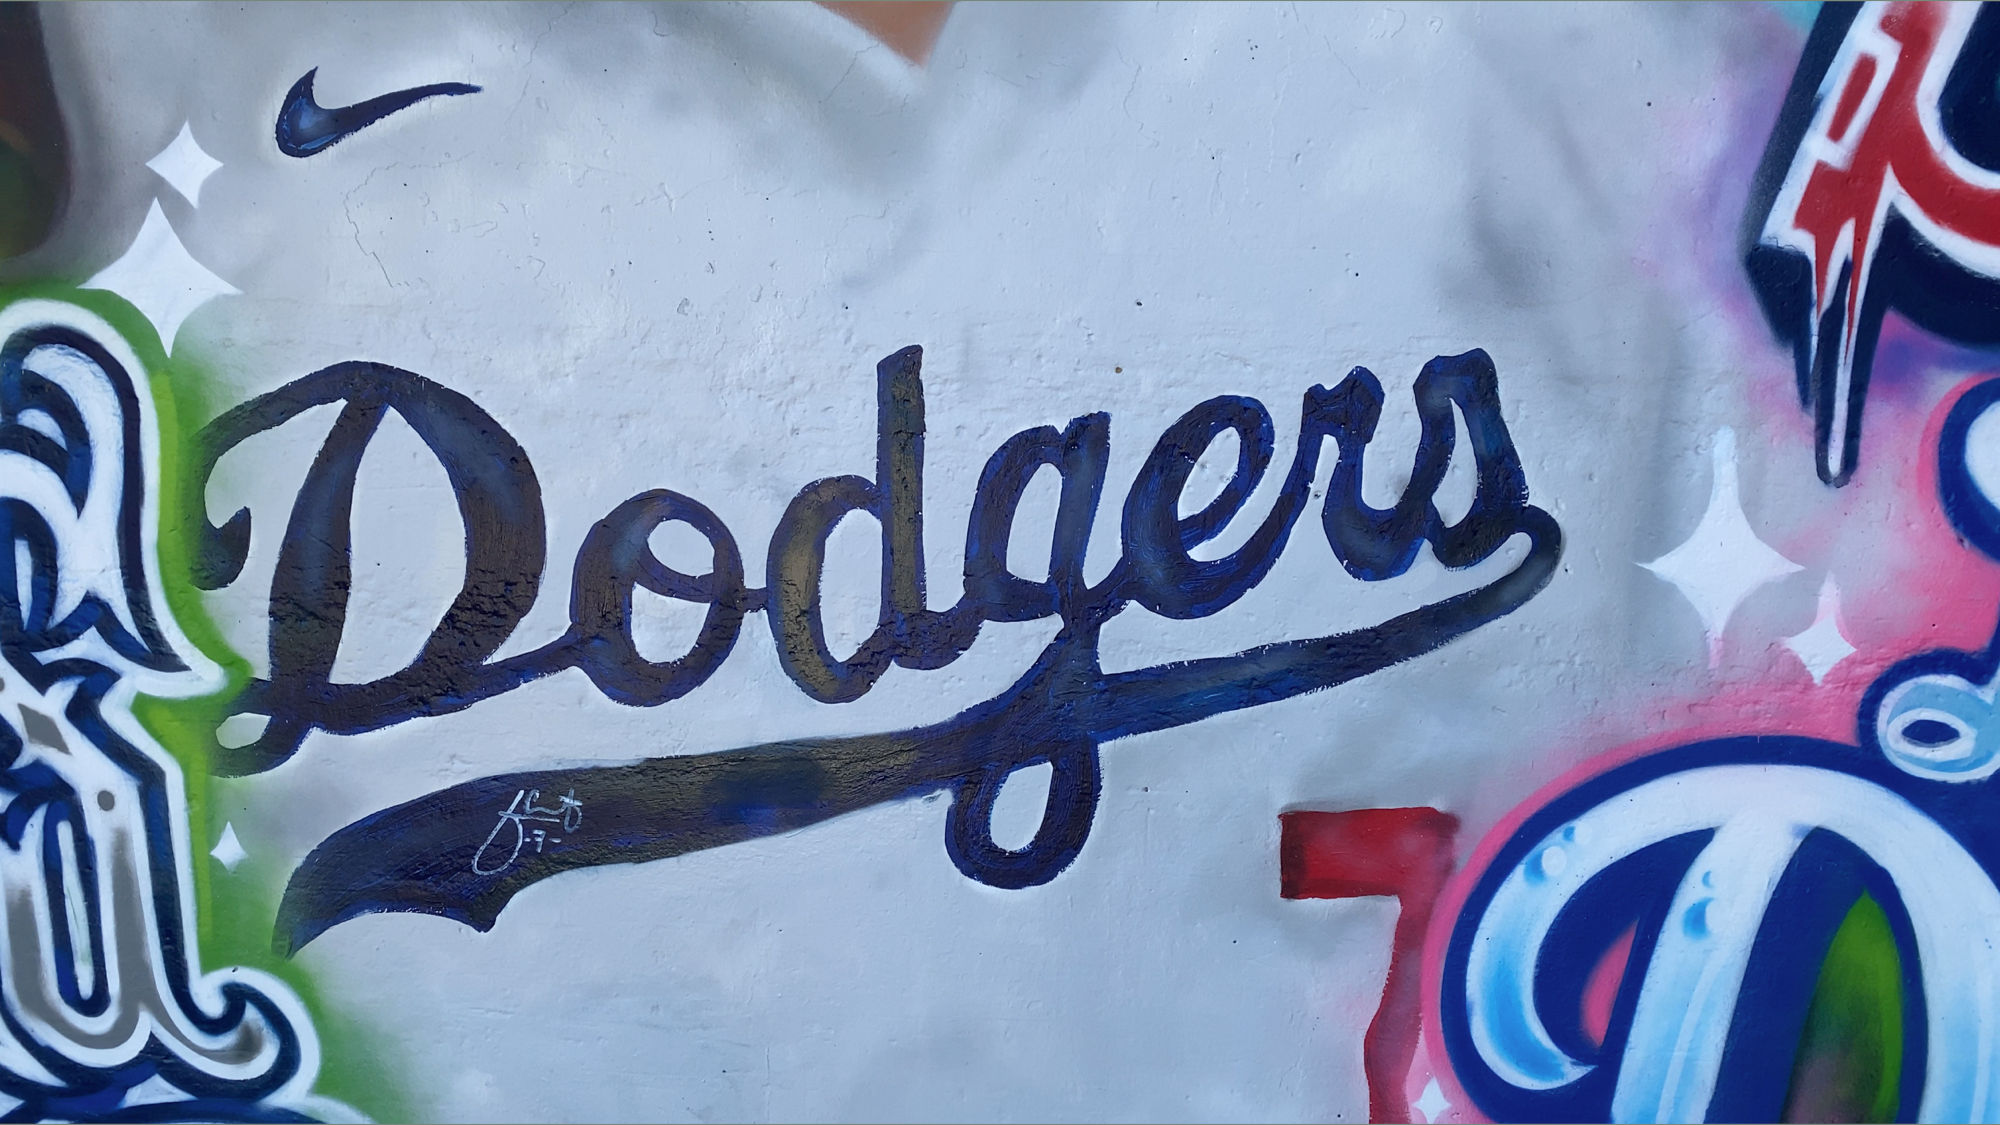 Murals Dodgers Jersey